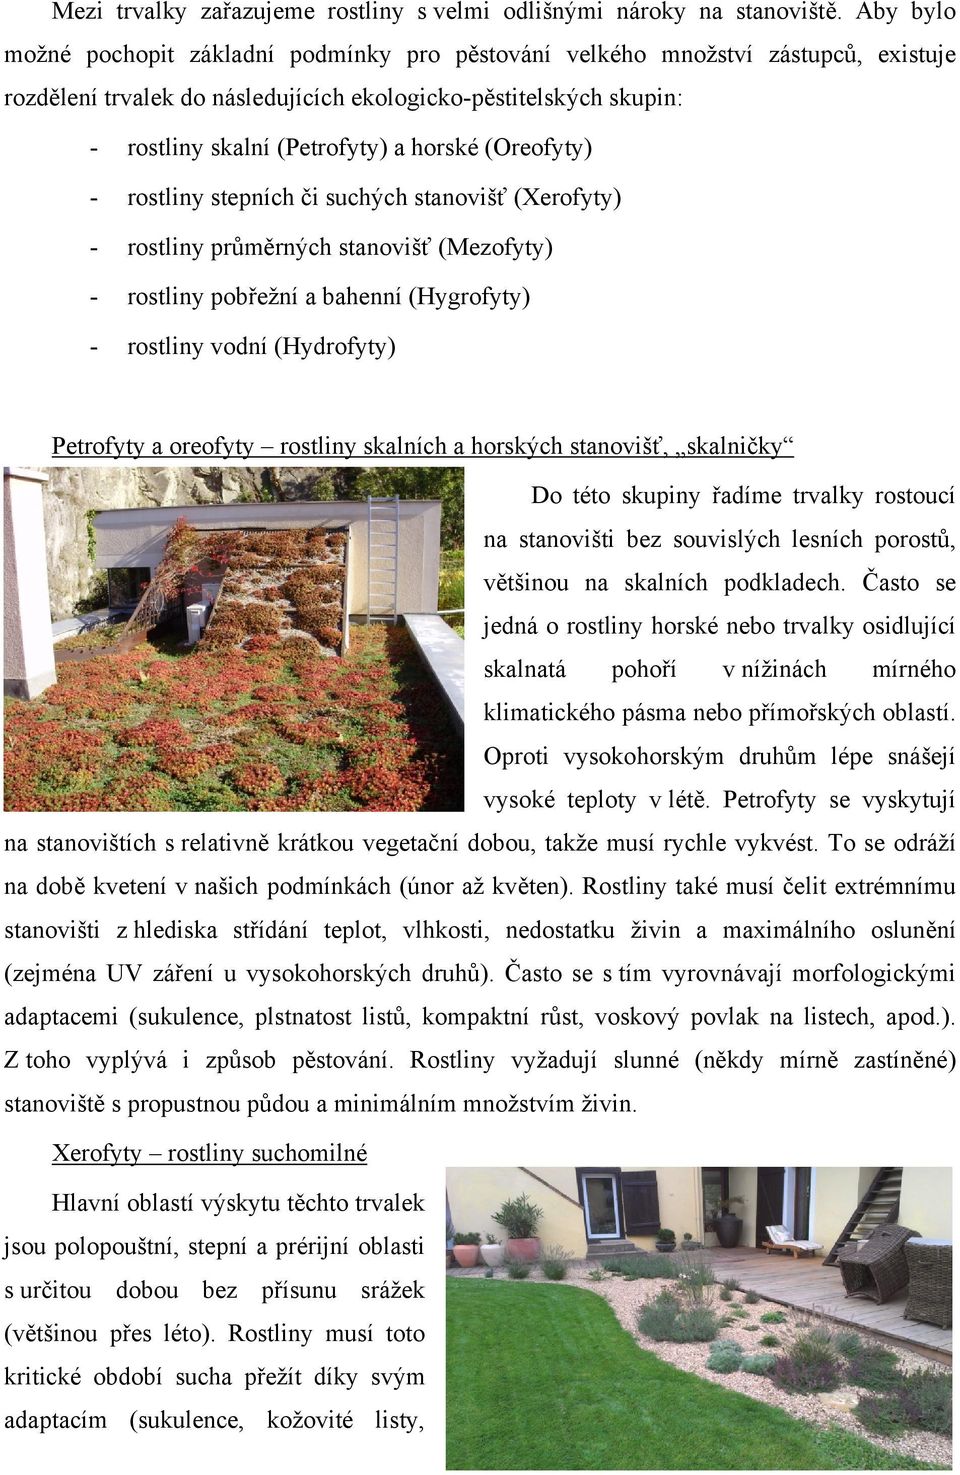 (Oreofyty) - rostliny stepních či suchých stanovišť (Xerofyty) - rostliny průměrných stanovišť (Mezofyty) - rostliny pobřežní a bahenní (Hygrofyty) - rostliny vodní (Hydrofyty) Petrofyty a oreofyty